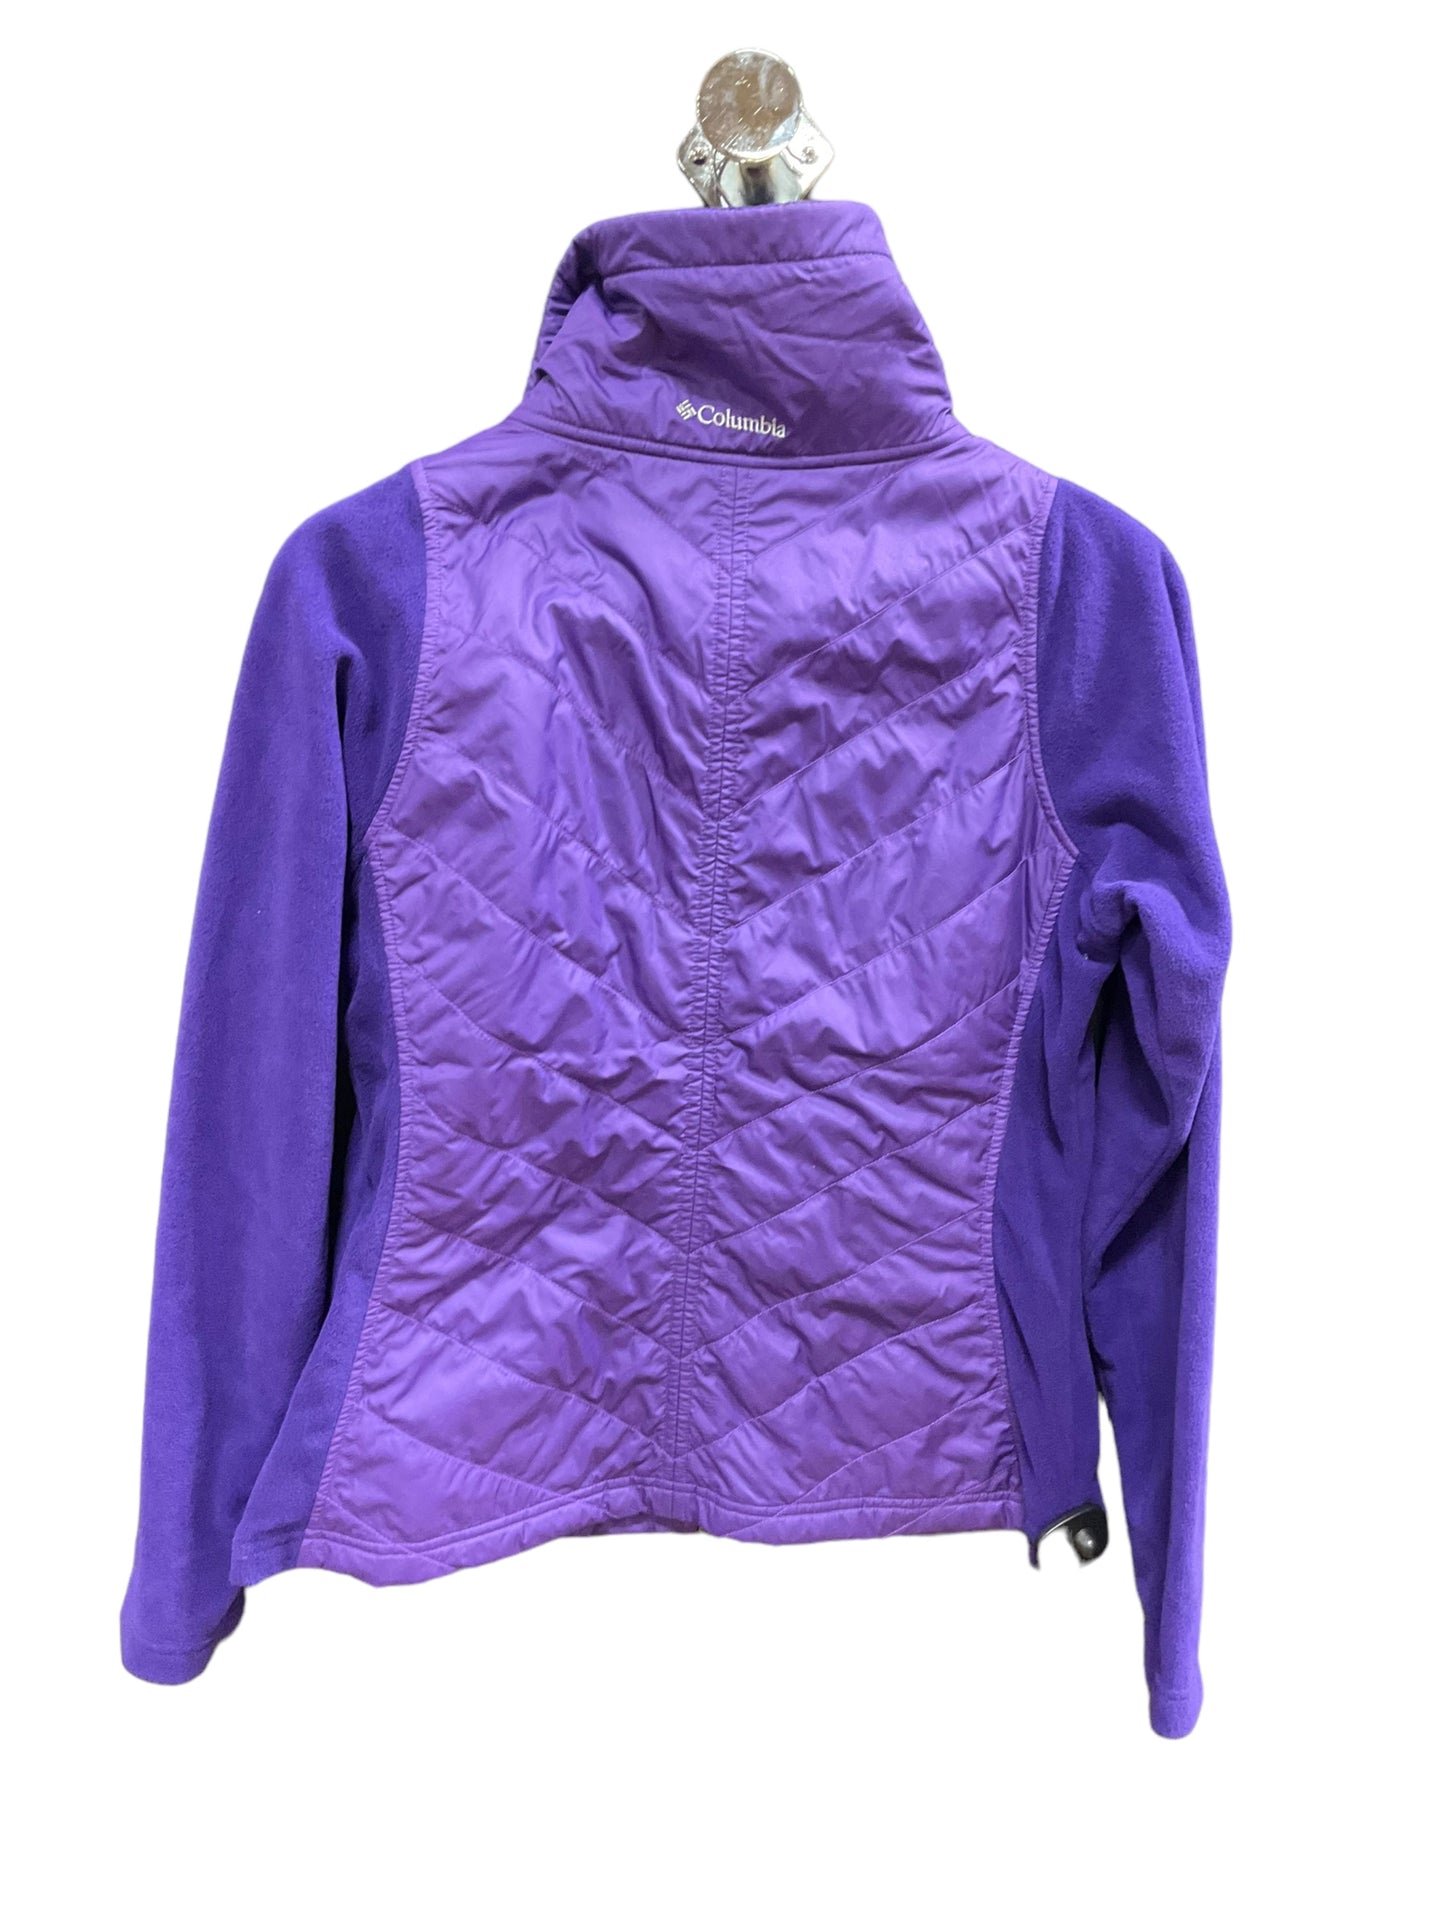 Jacket Fleece By Columbia  Size: M